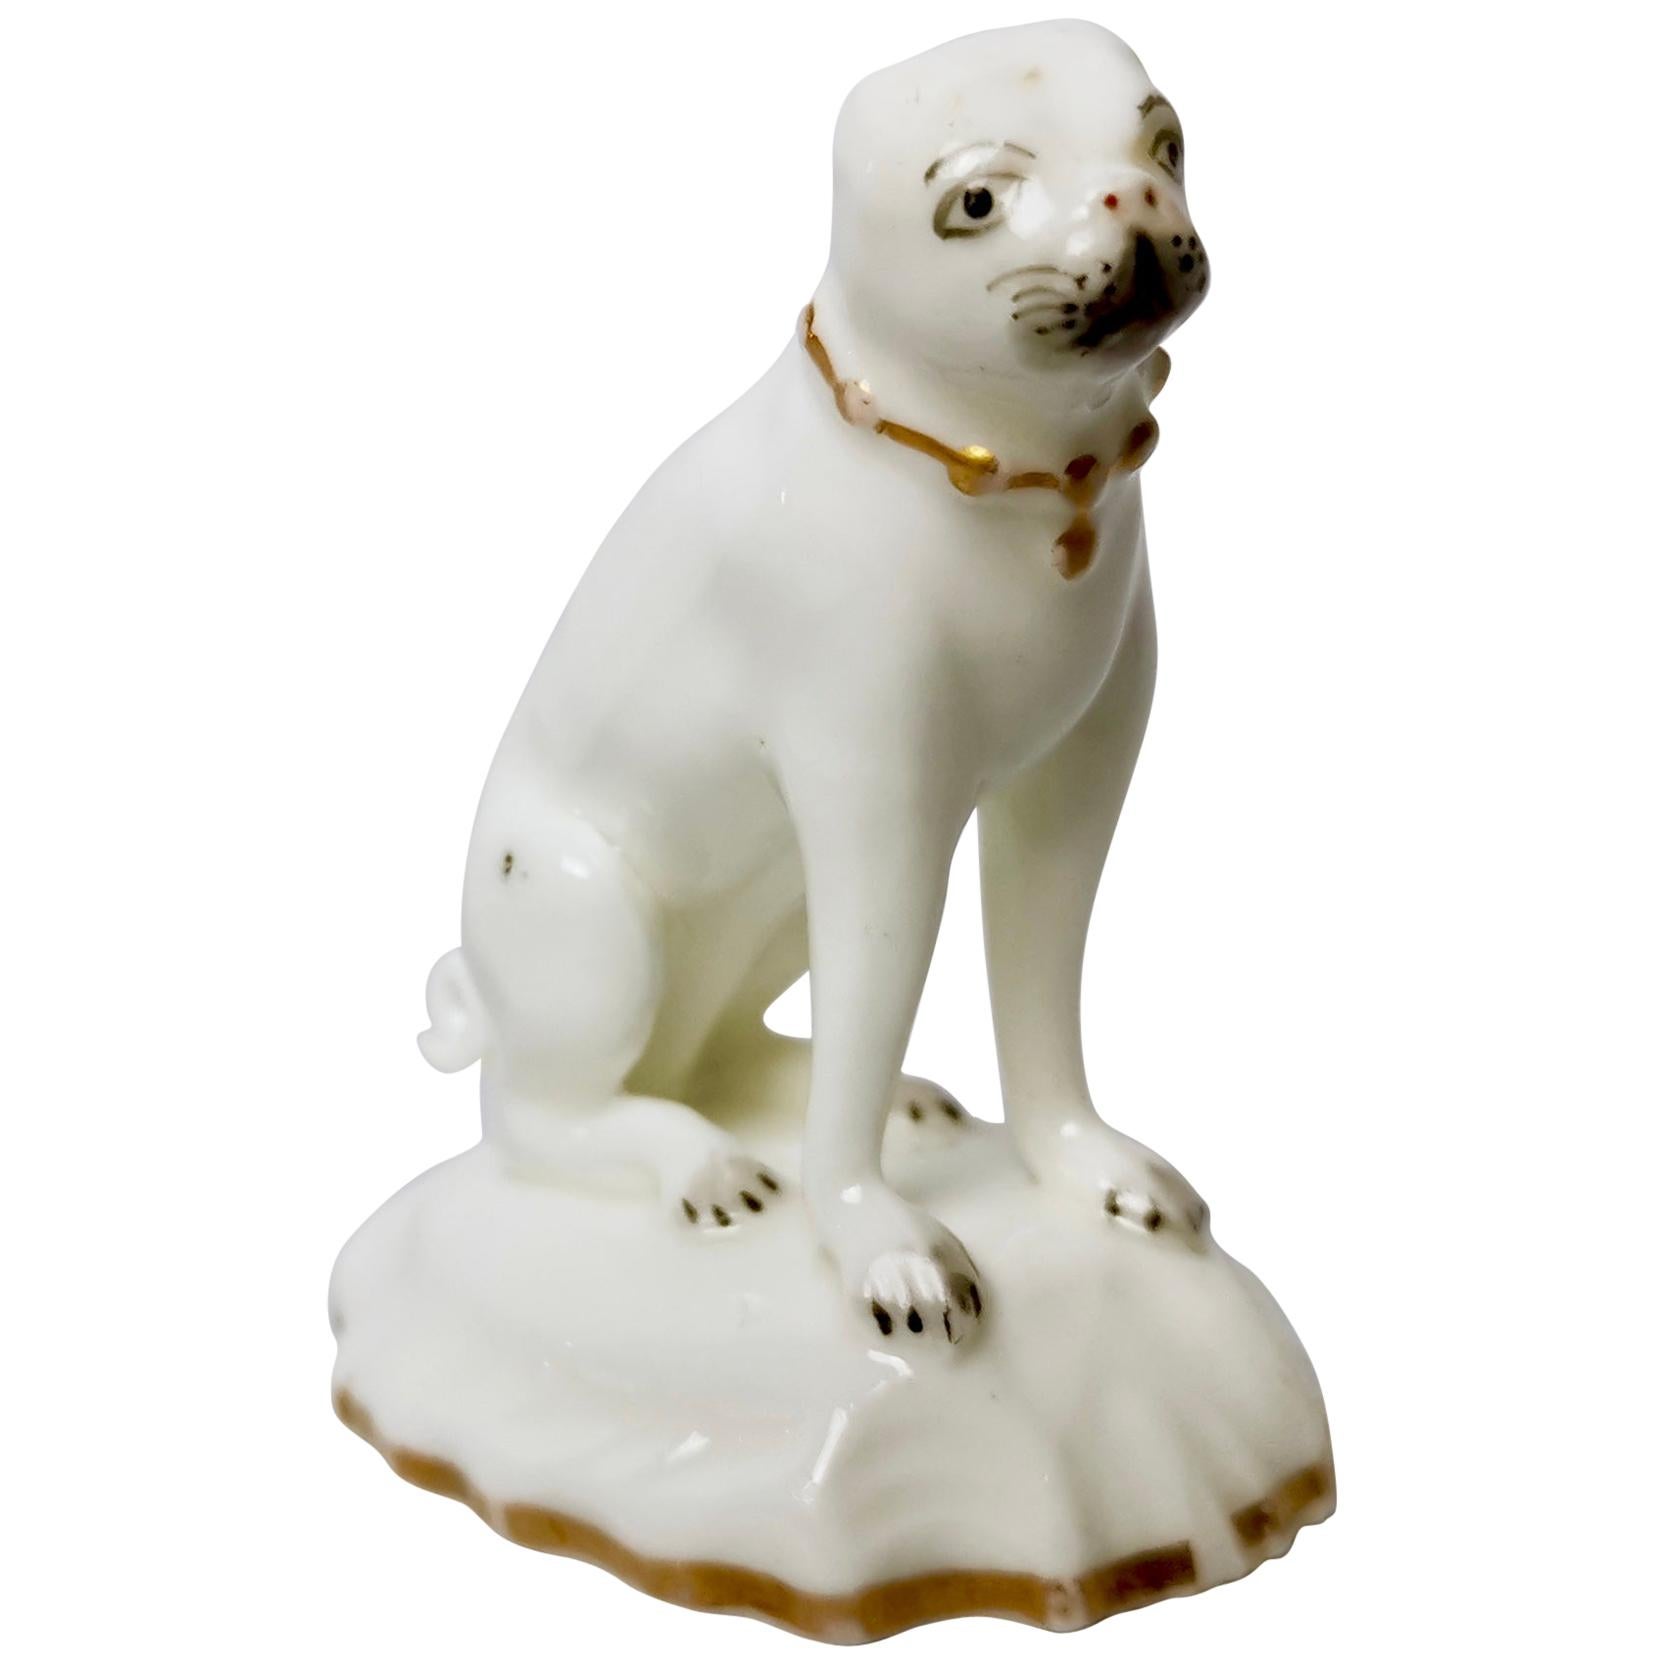 Rockingham Porcelain Pug Dog, White, Rococo Revival, circa 1835